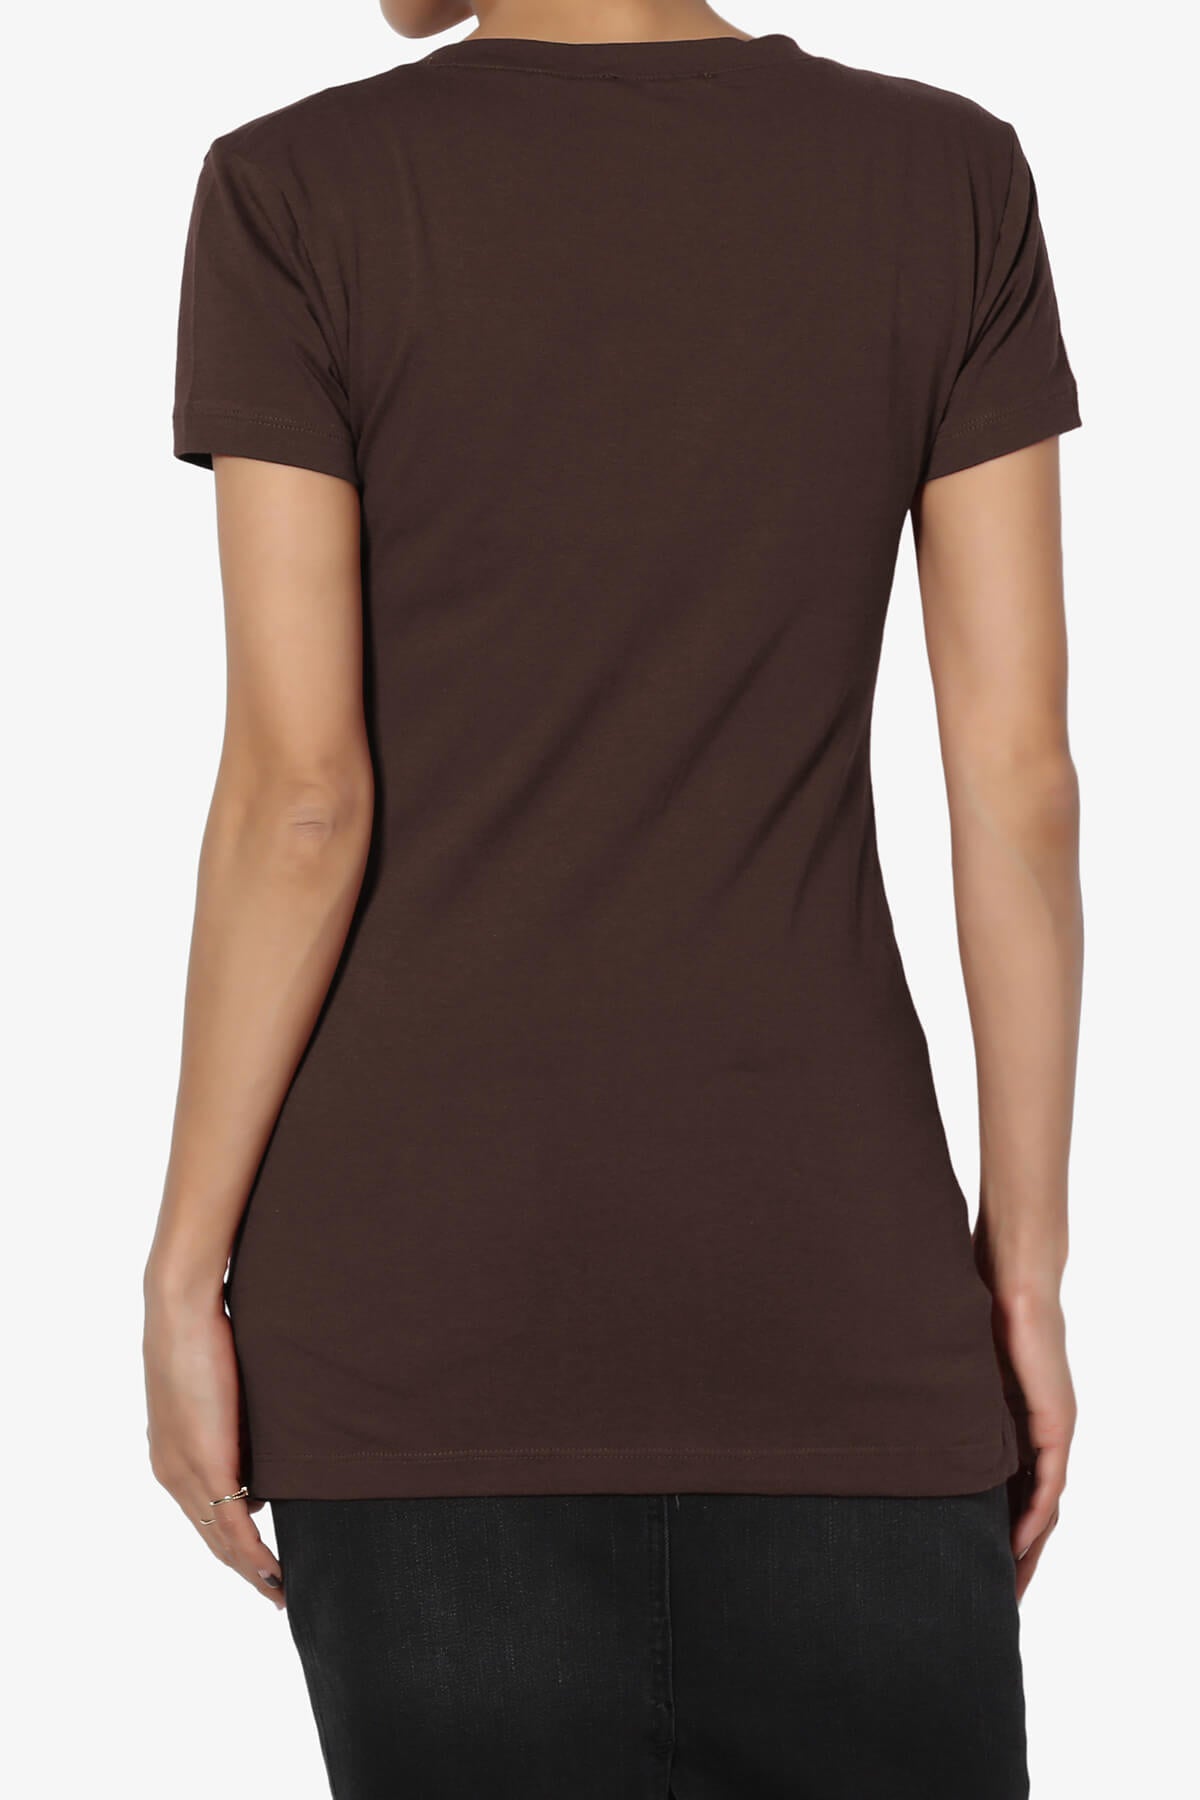 Candela V-Neck Short Sleeve T-Shirts BROWN_2